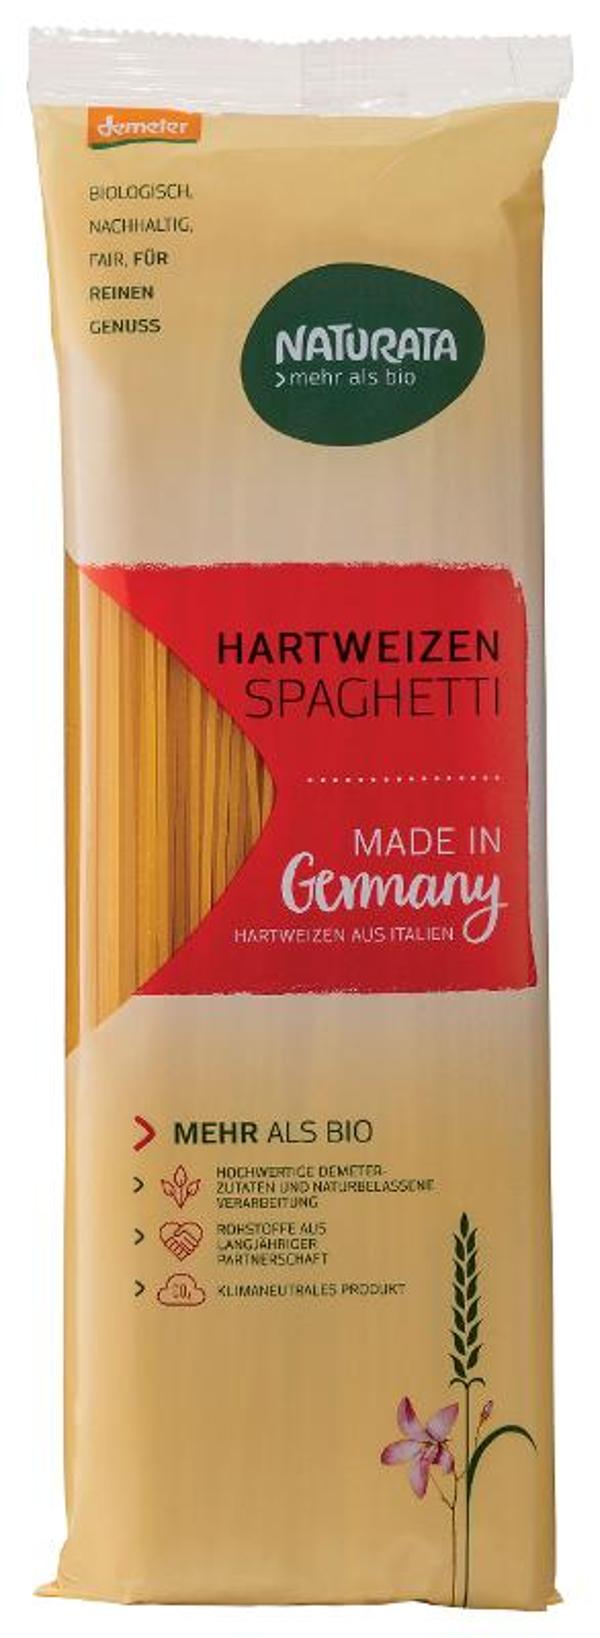 Produktfoto zu Weizenspaghetti